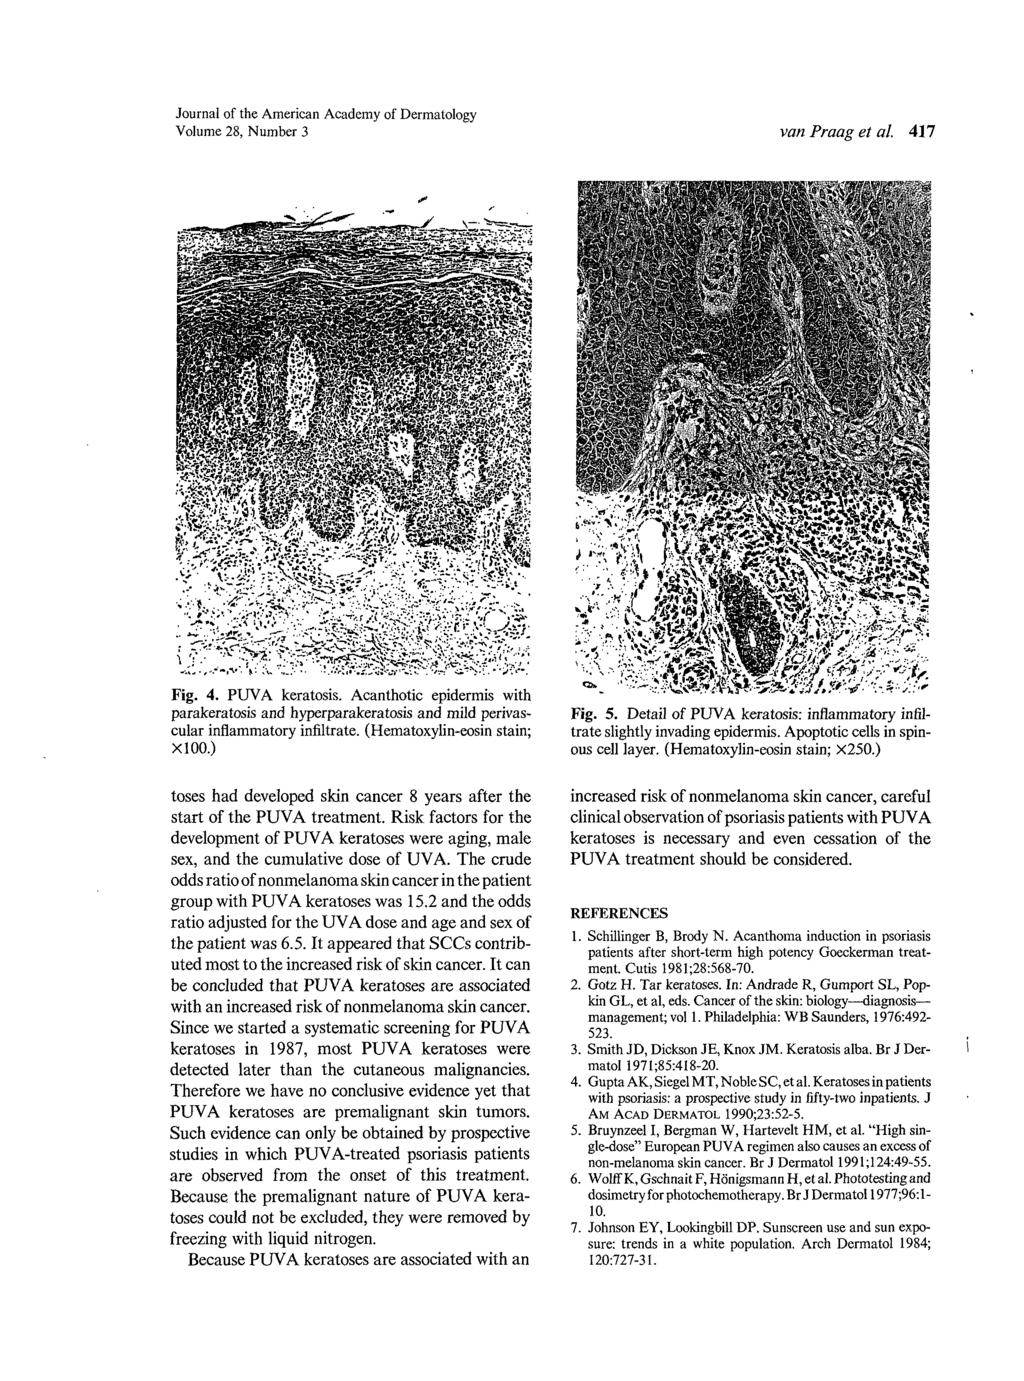 Journal of the American Academy of Dermatology Volume 28, Number 3 van Praag et al. 417 Fig. 4. PUVA keratosis.